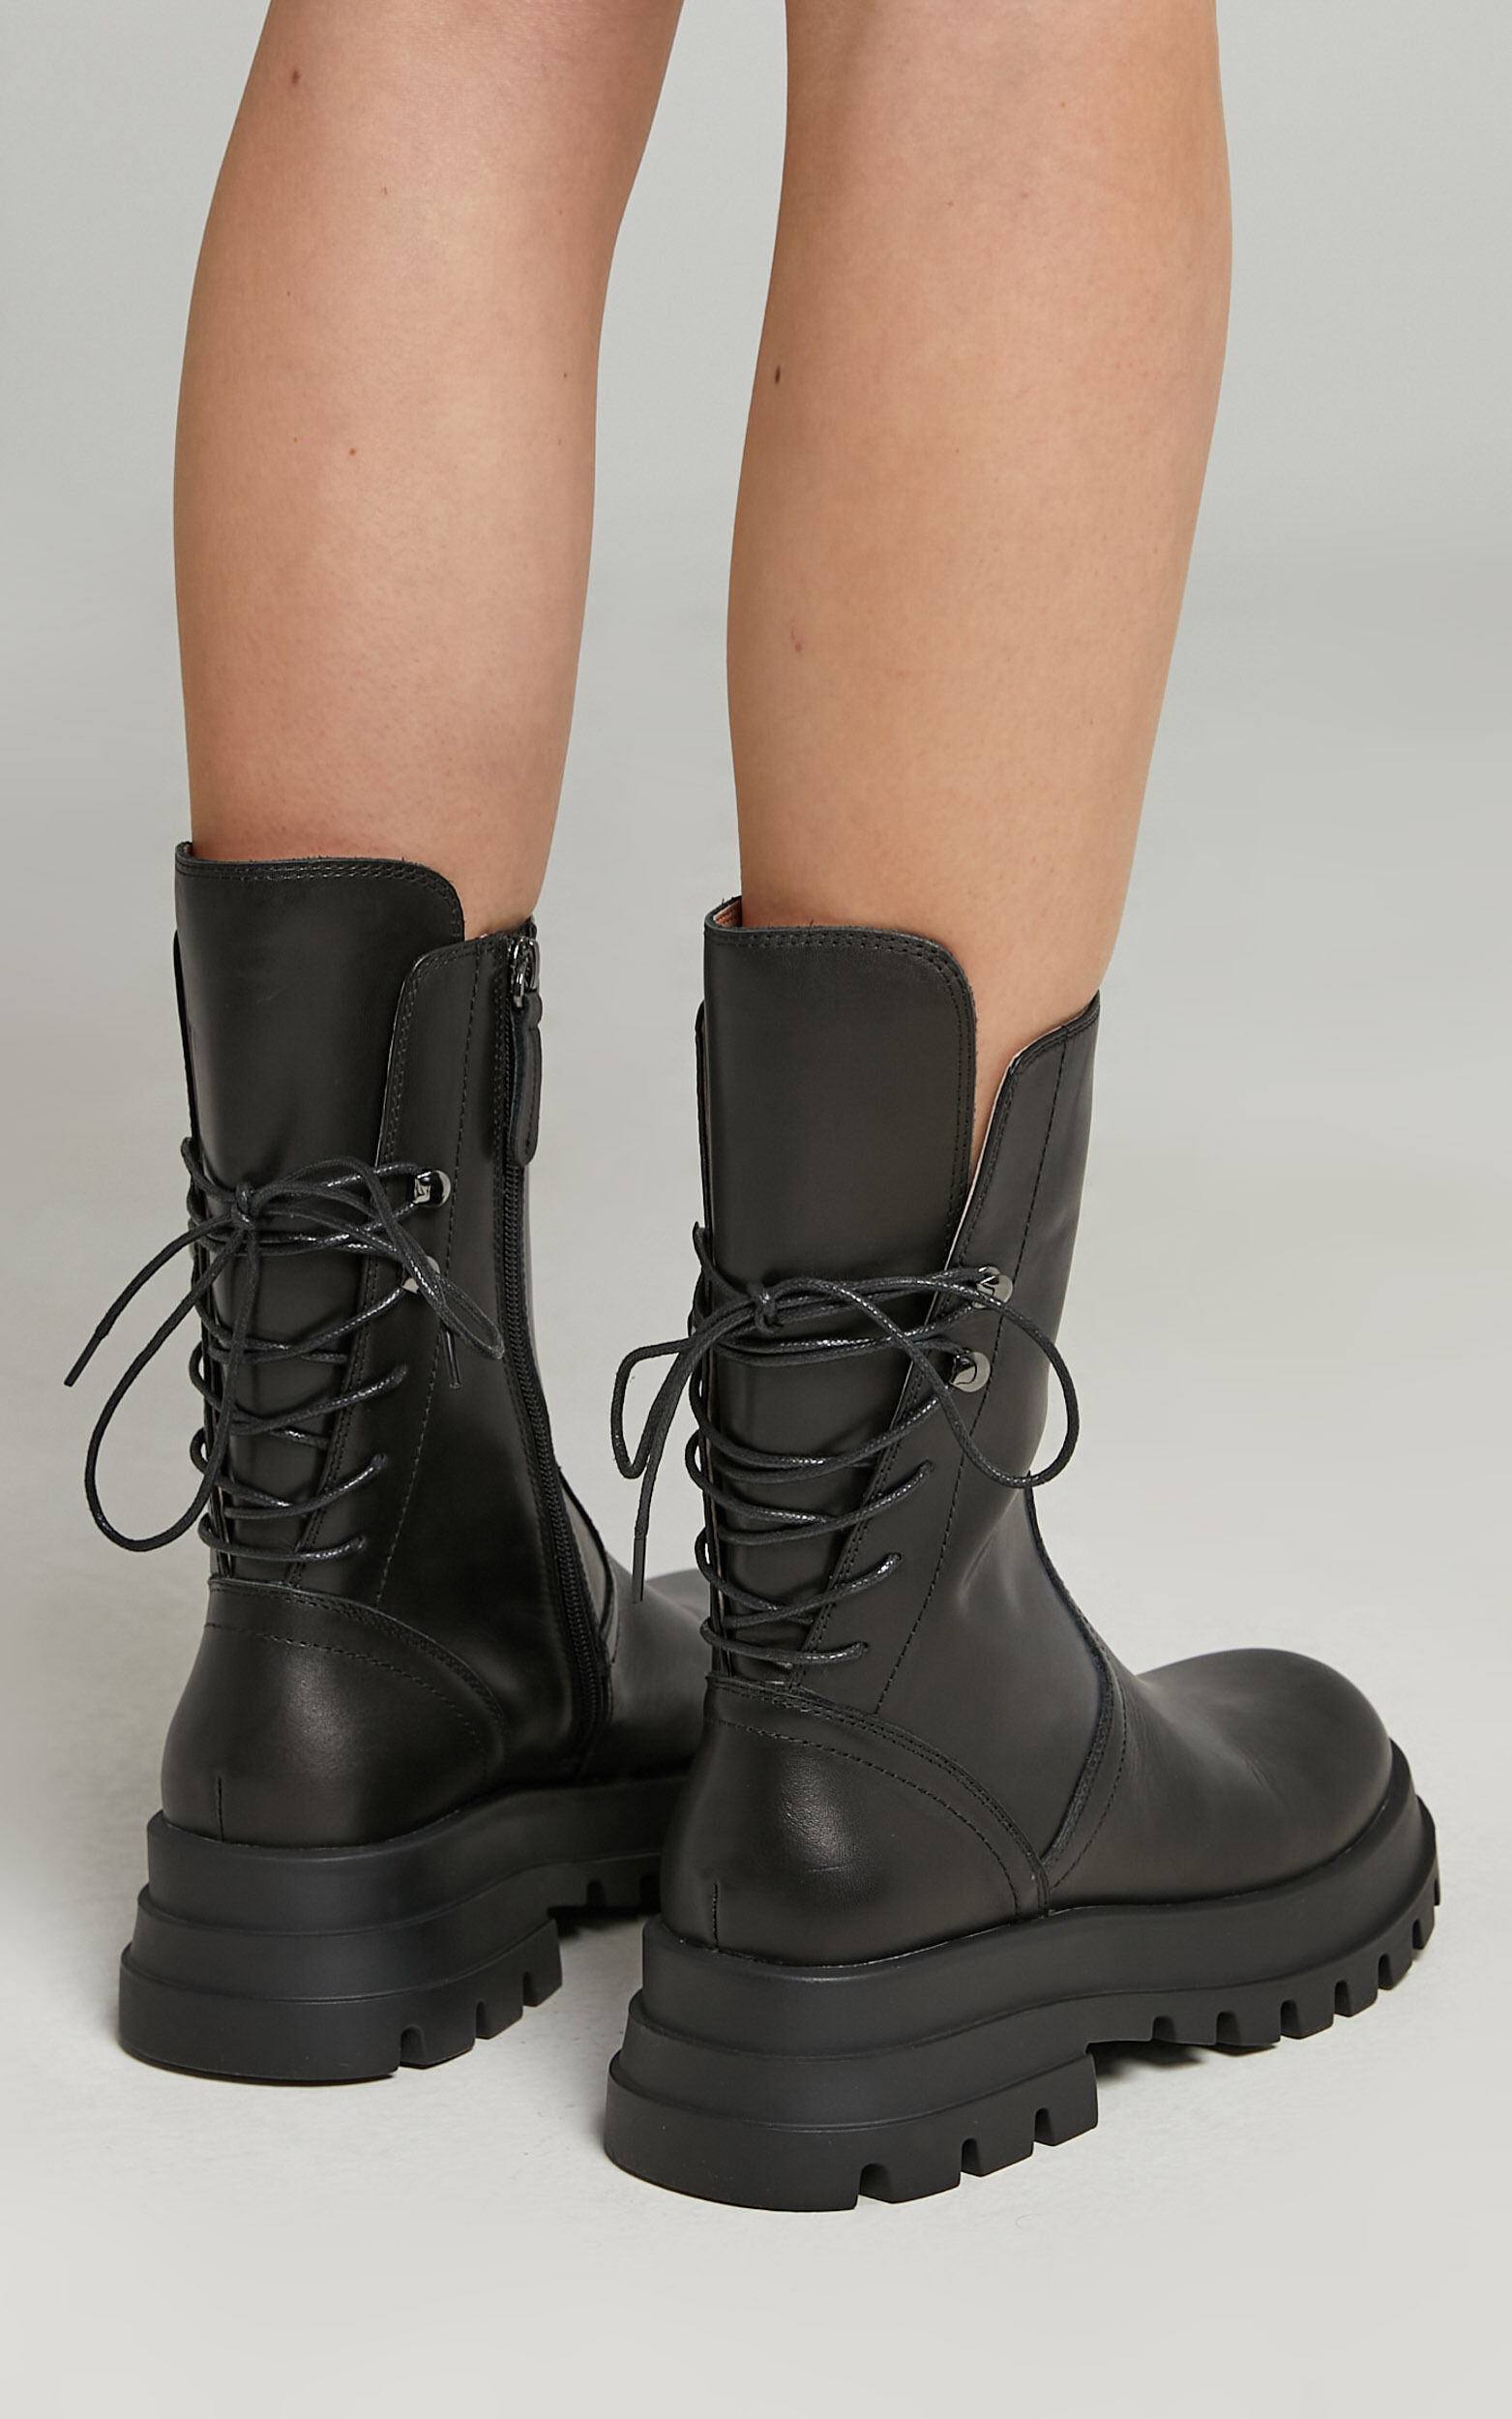 Alias Mae - Dom Boots in Black Leather | Showpo